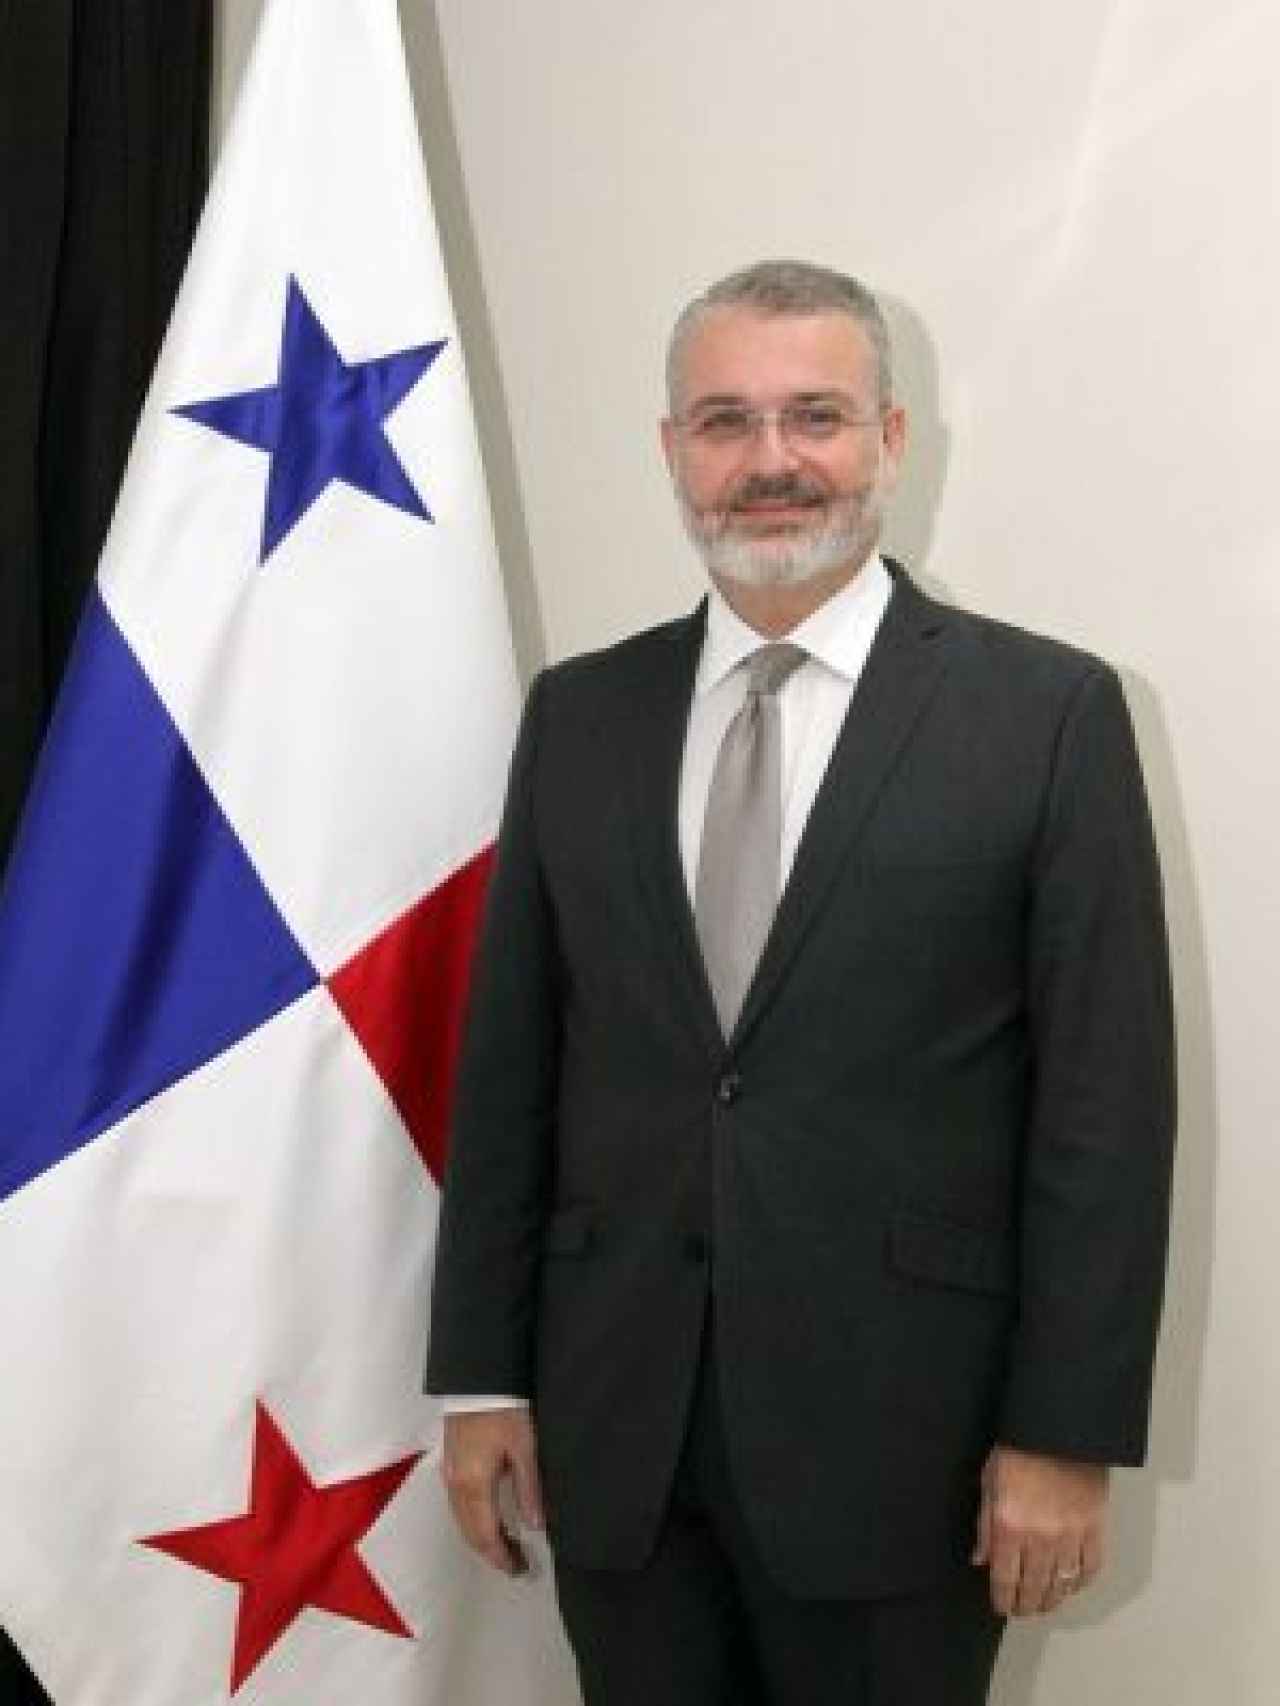 Imagen distribuida por la embajada de Panamá en España con motivo del nombramiento de Henríquez.